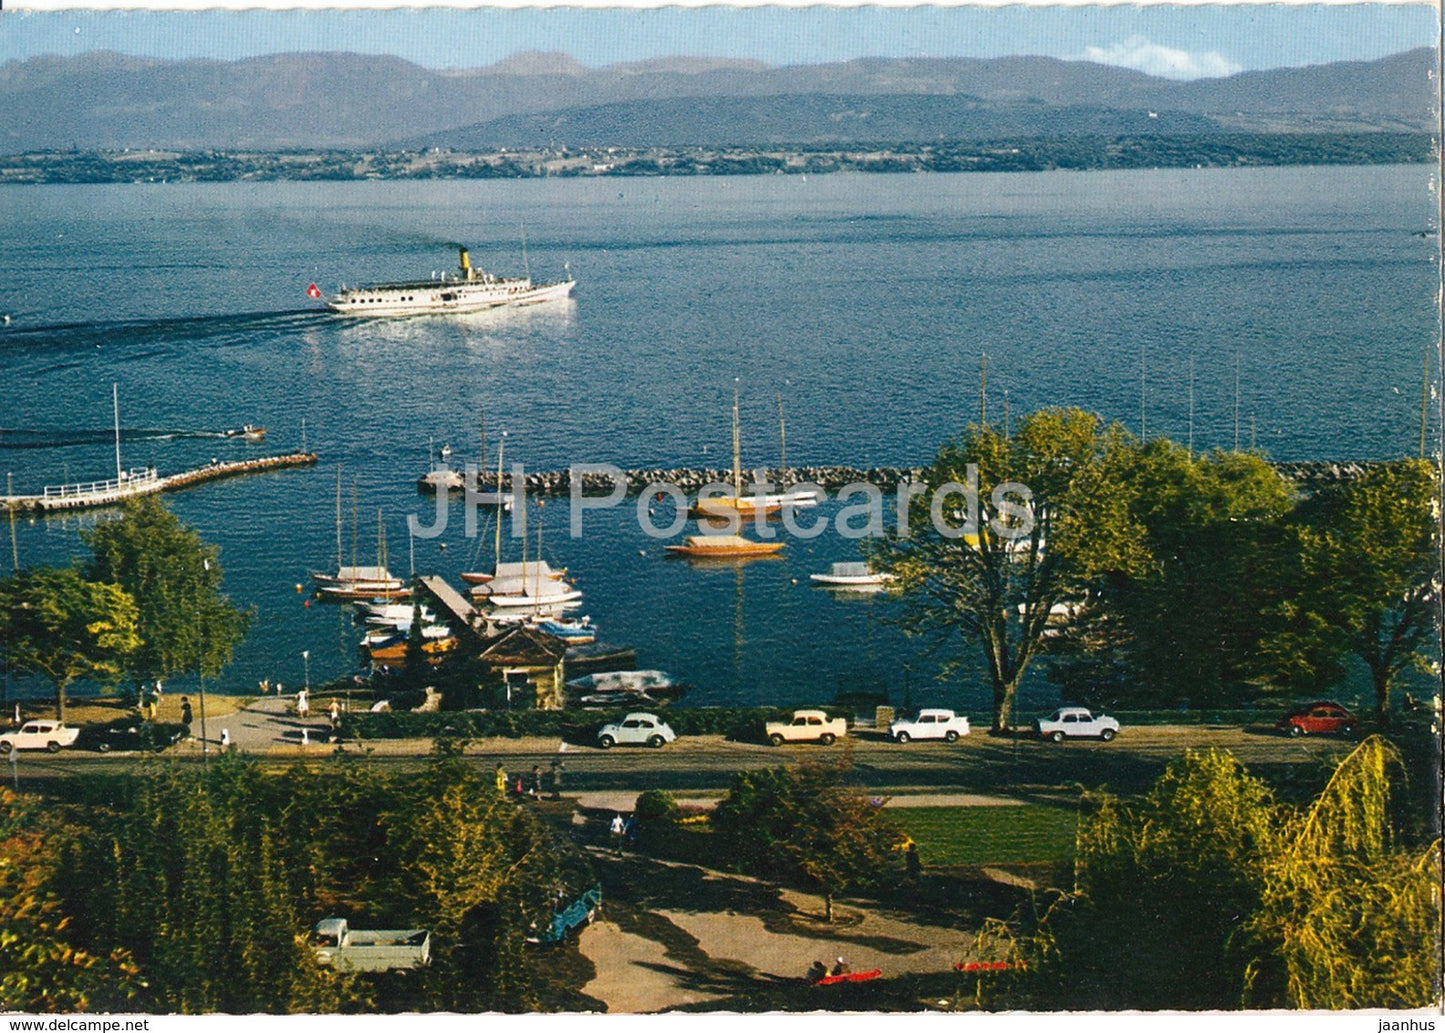 Nyon - La Promenade du Bourg de Rive - Le Lac et le Mont Blanc - boat - car - NY 1 - Switzerland - unused - JH Postcards